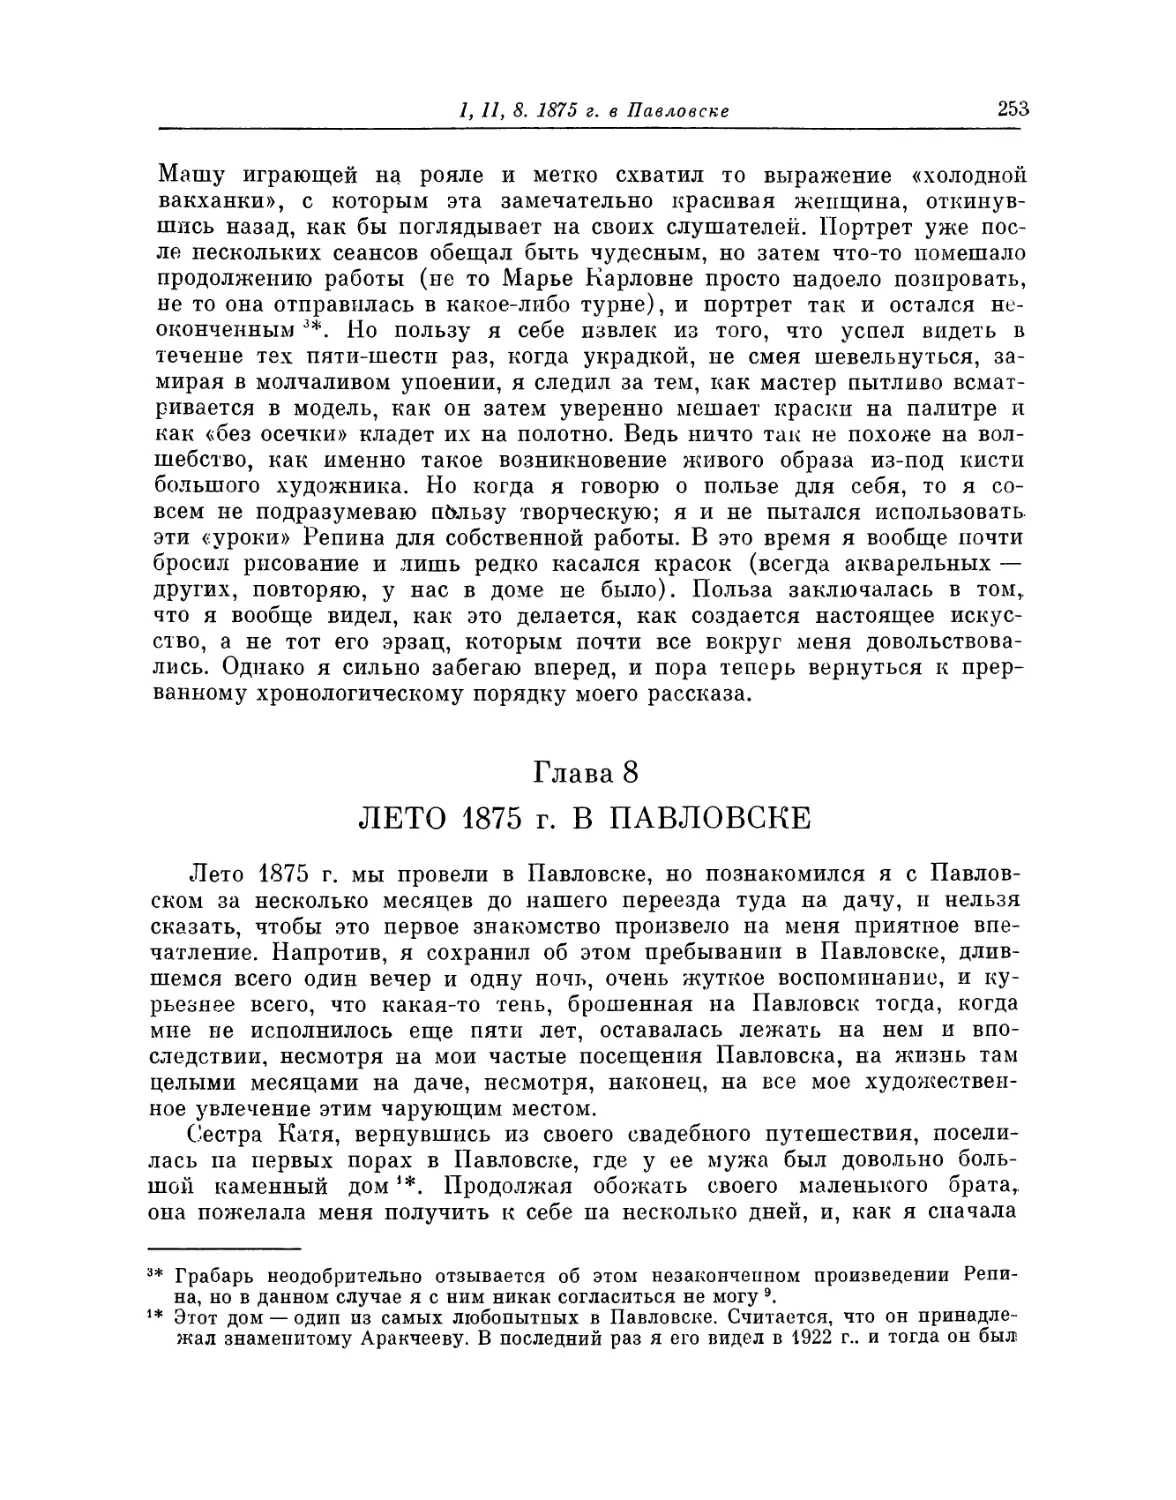 Глава 8. Лето 1875 г. в Павловске